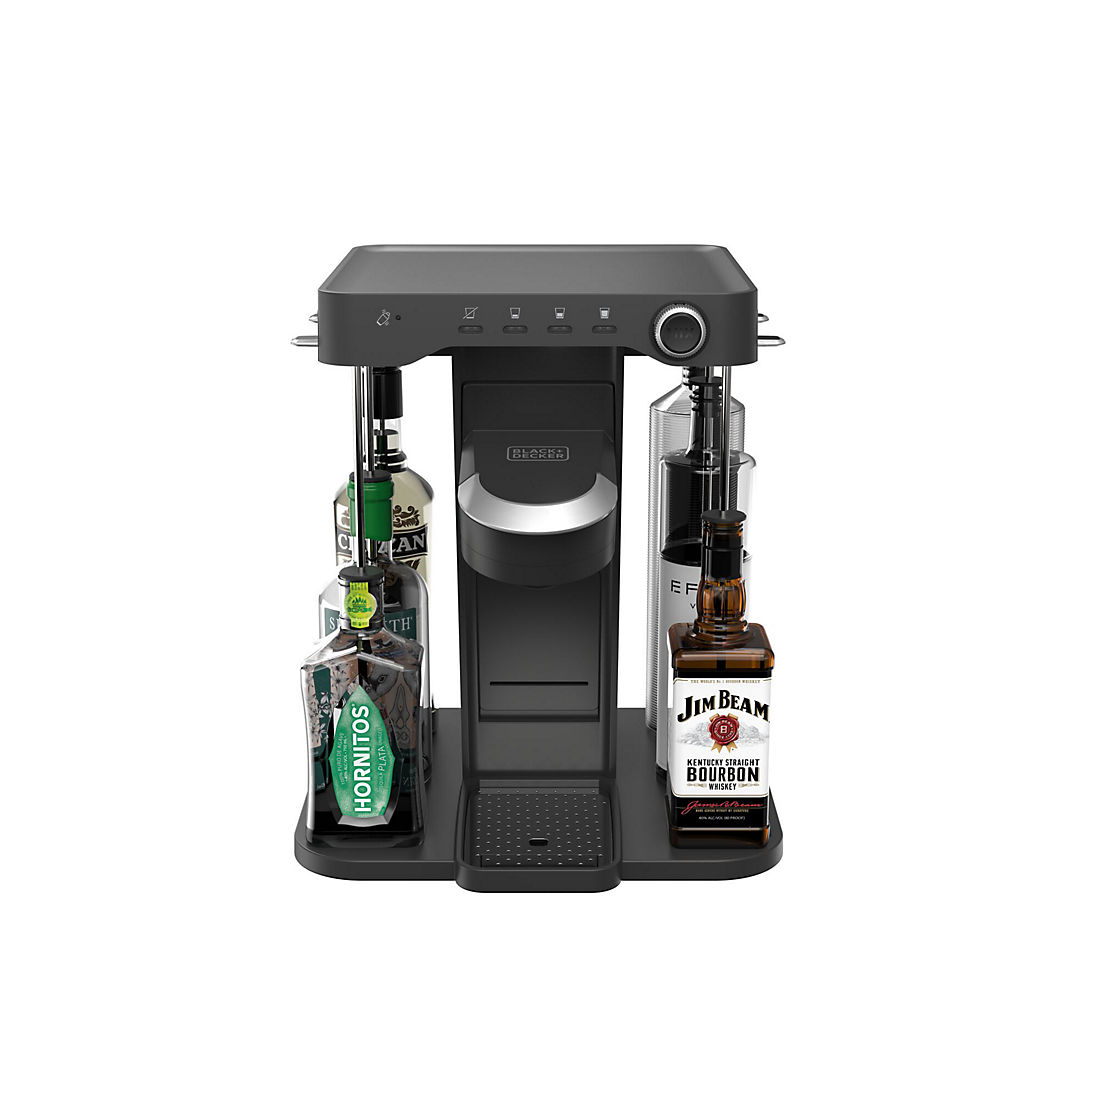 The new Bev by Black & Decker cocktail machine! #bev